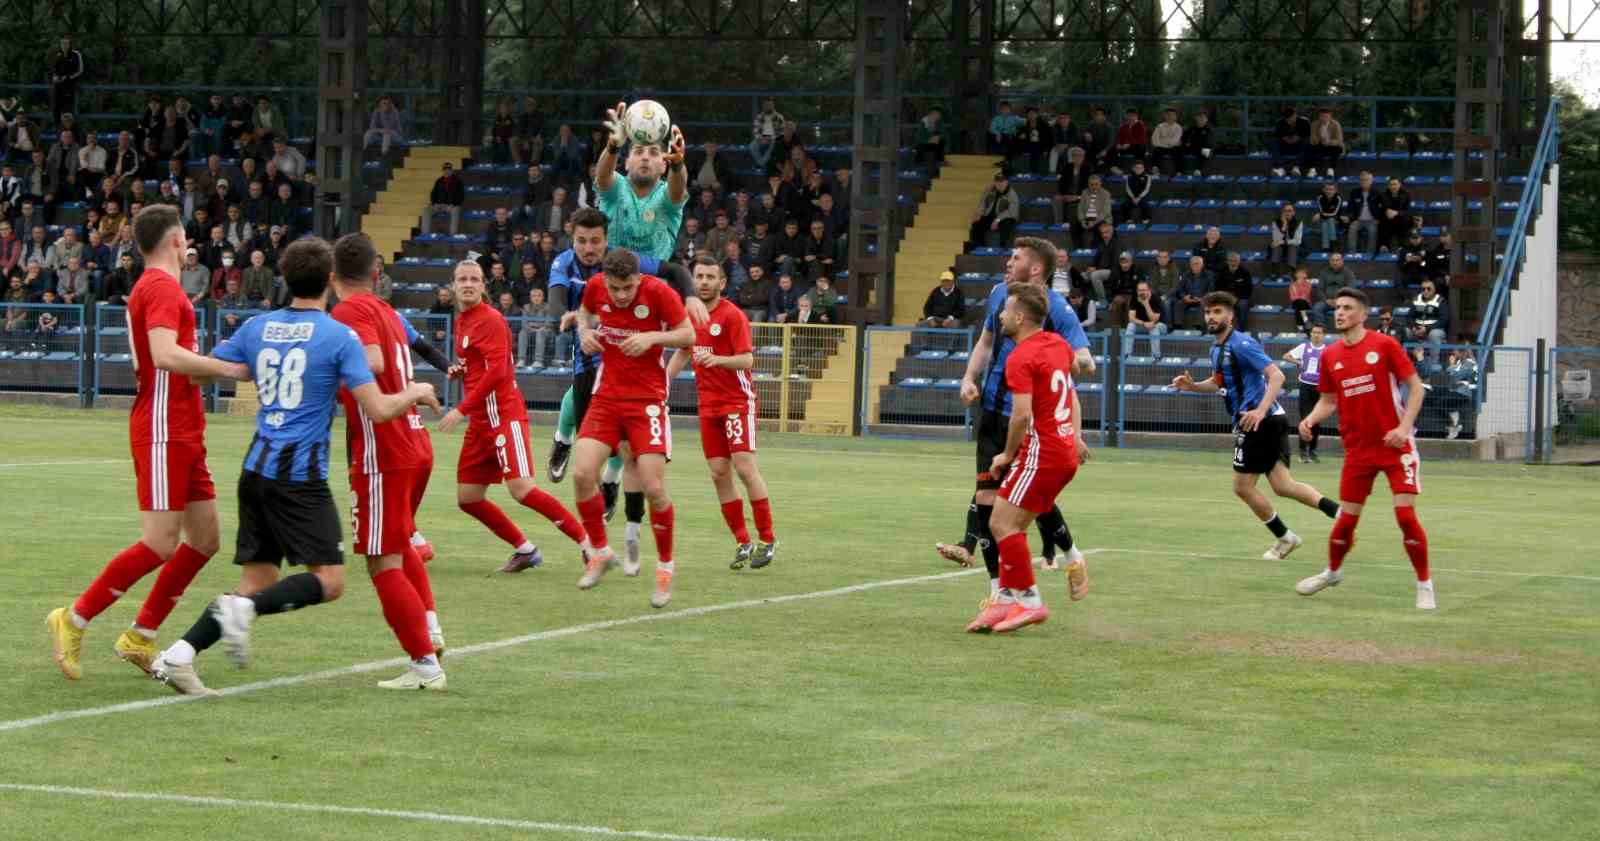 TFF 2. Lig: TECO Karacabey Belediyespor: 0 - Etimesgut Belediyespor: 1